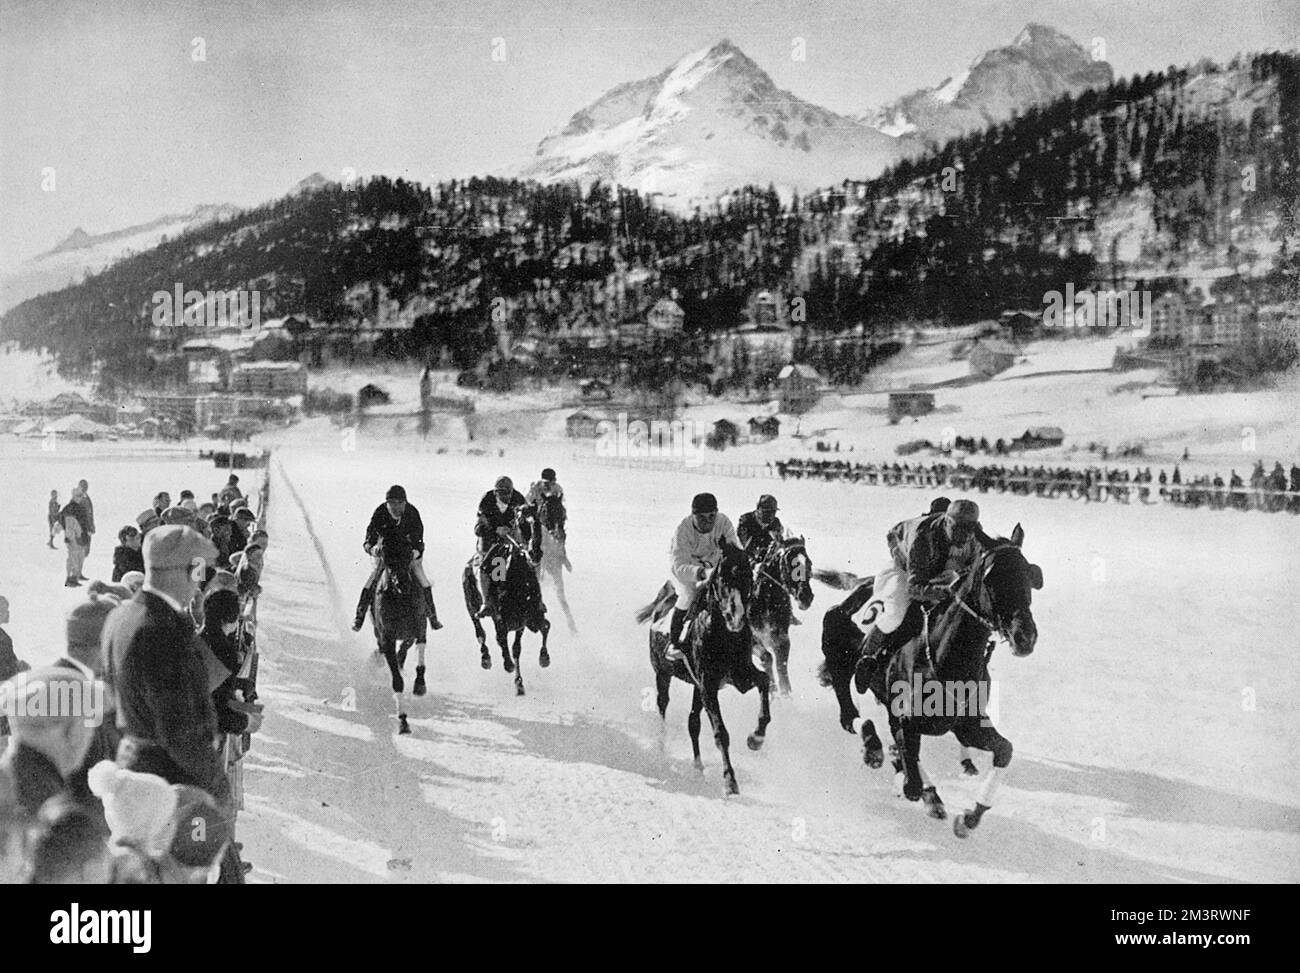 Pferderennen auf dem gefrorenen See in St. Moritz, ein jährlicher Zuschauersport im Smart Ski Resort. Datum: 1927 Stockfoto